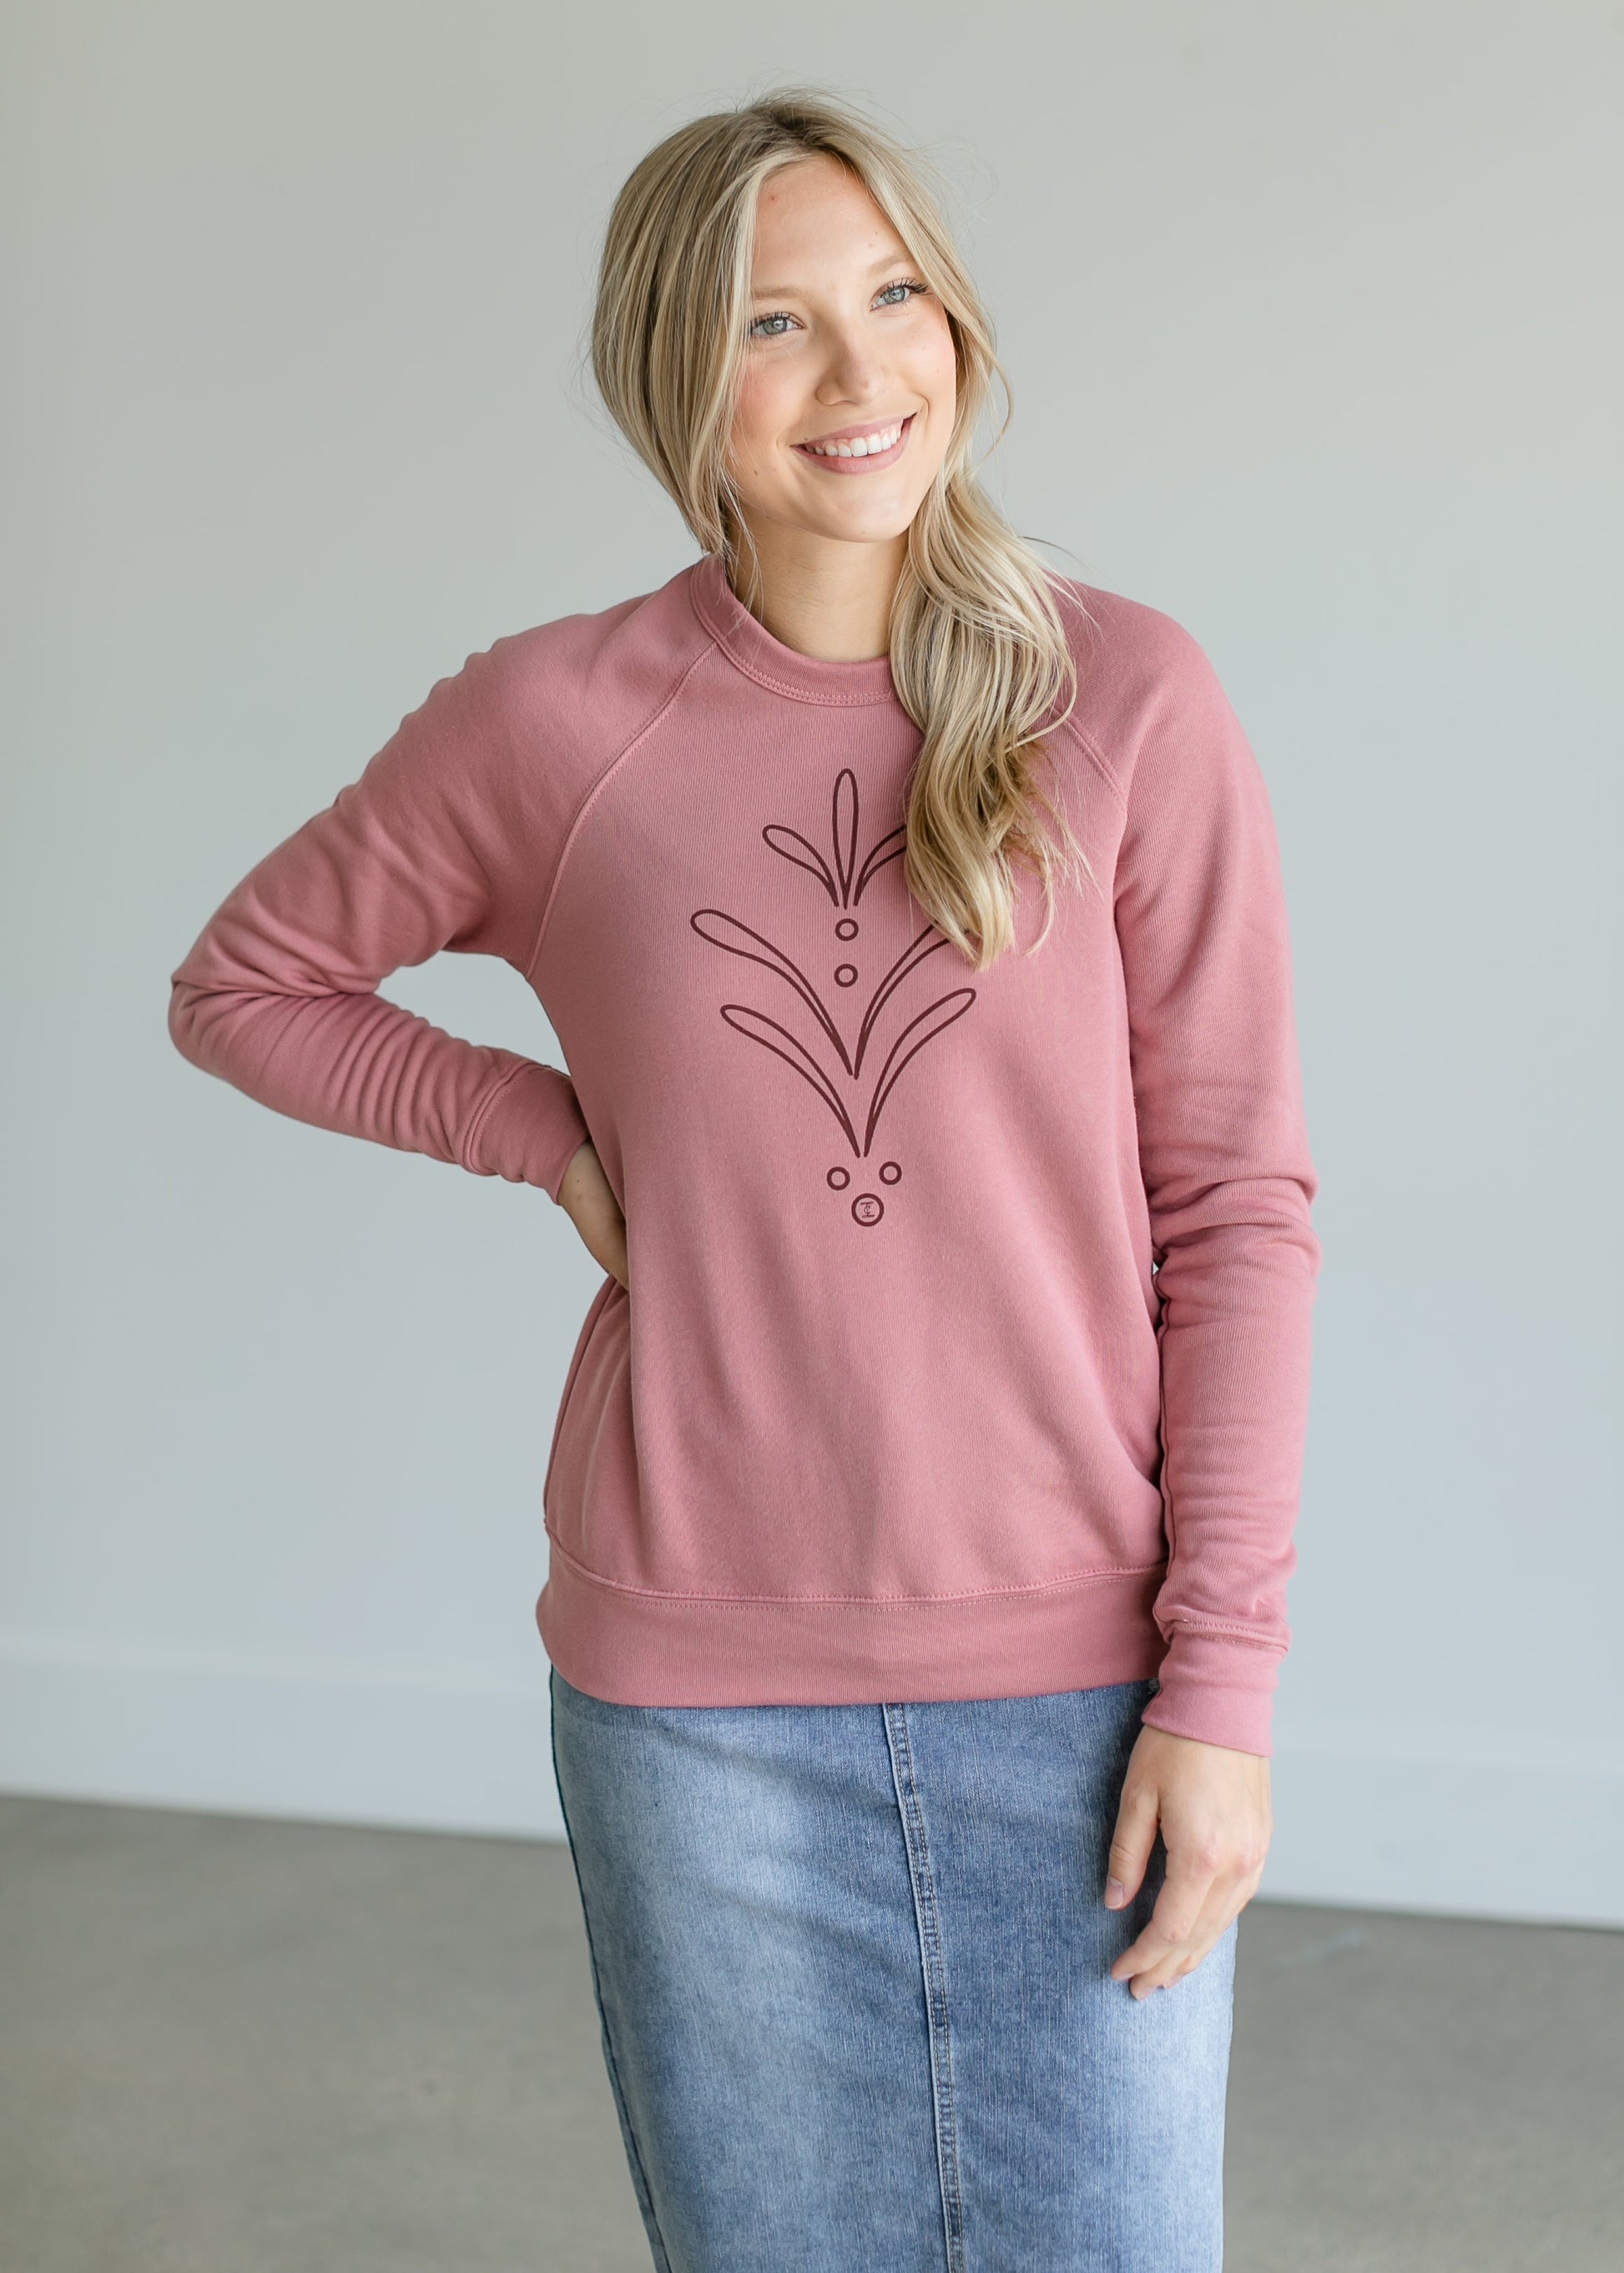 Bloom Gracefully Graphic Sweatshirt Tops